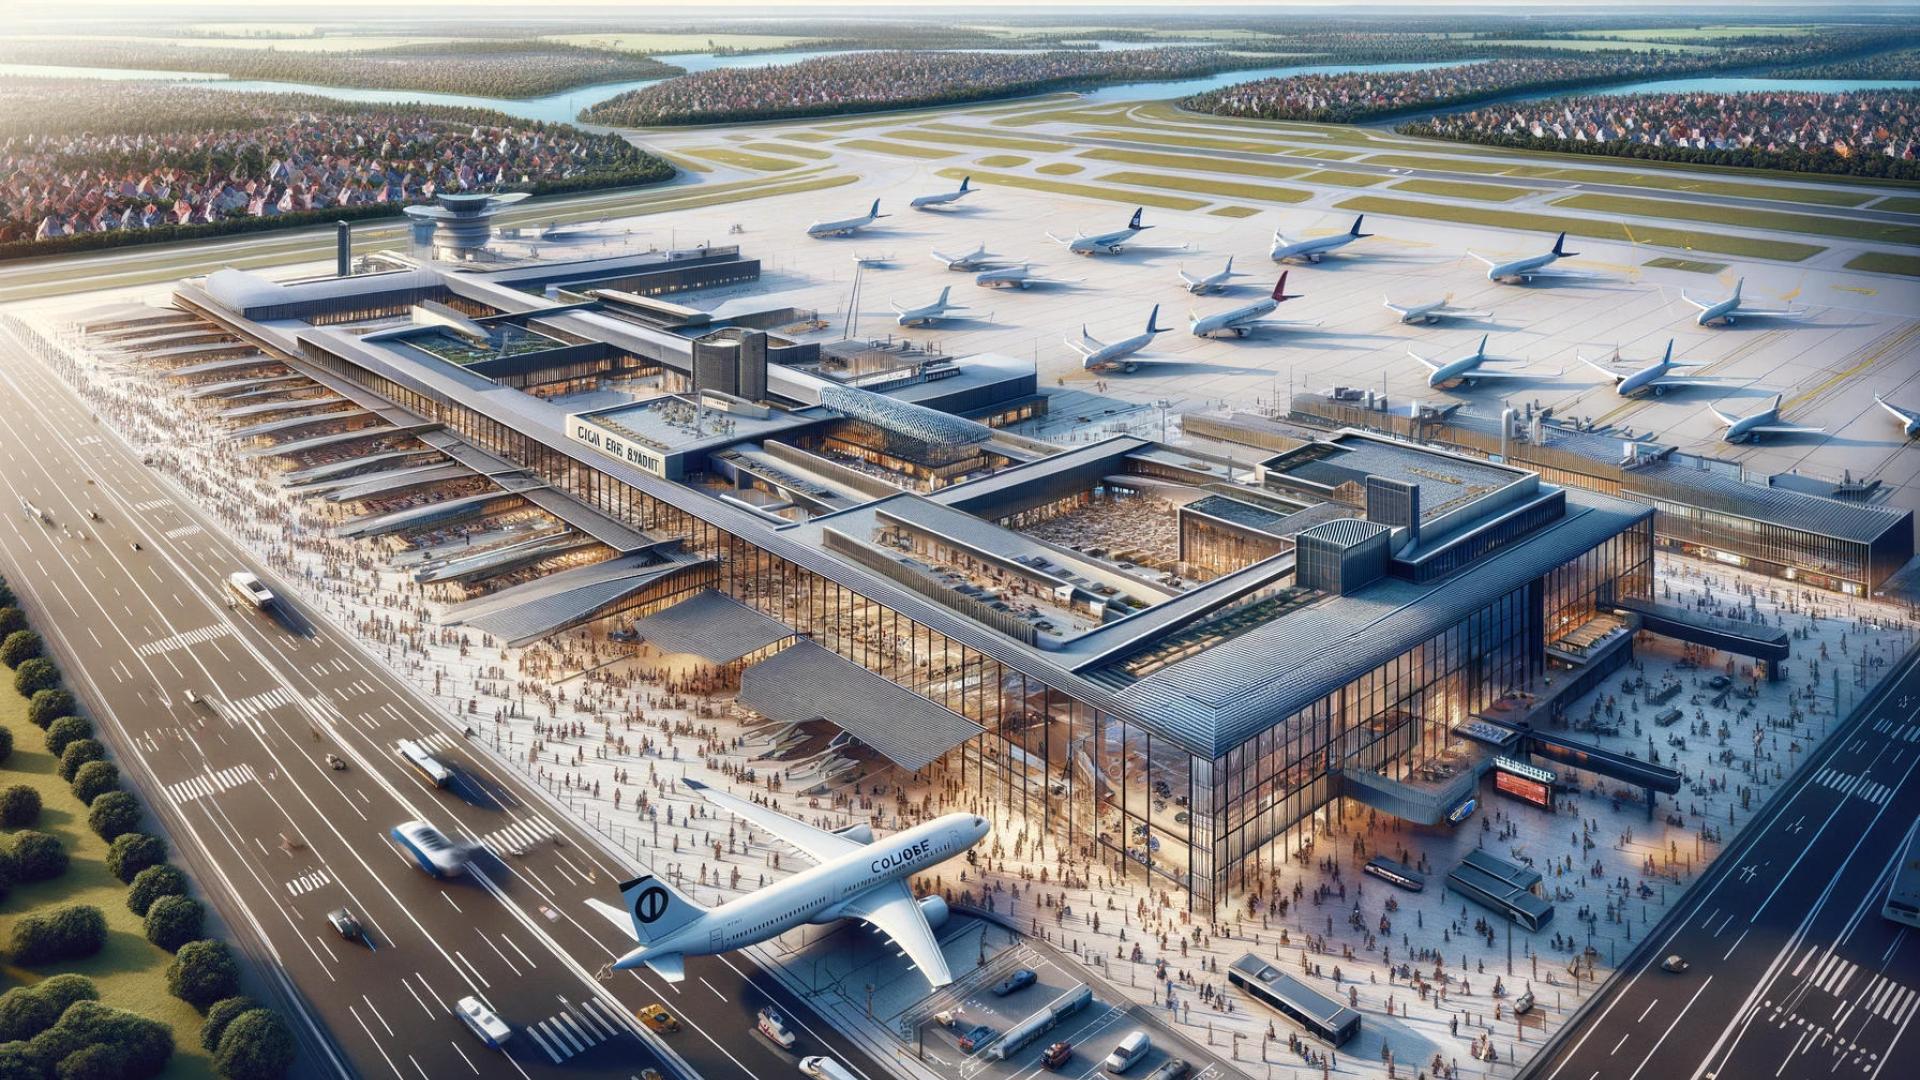 Eine detailgetreue Darstellung des Flughafens Köln/Bonn, Deutschland, im Seitenverhältnis 16:9. Das Bild fängt das geschäftige Treiben auf dem Flughafence